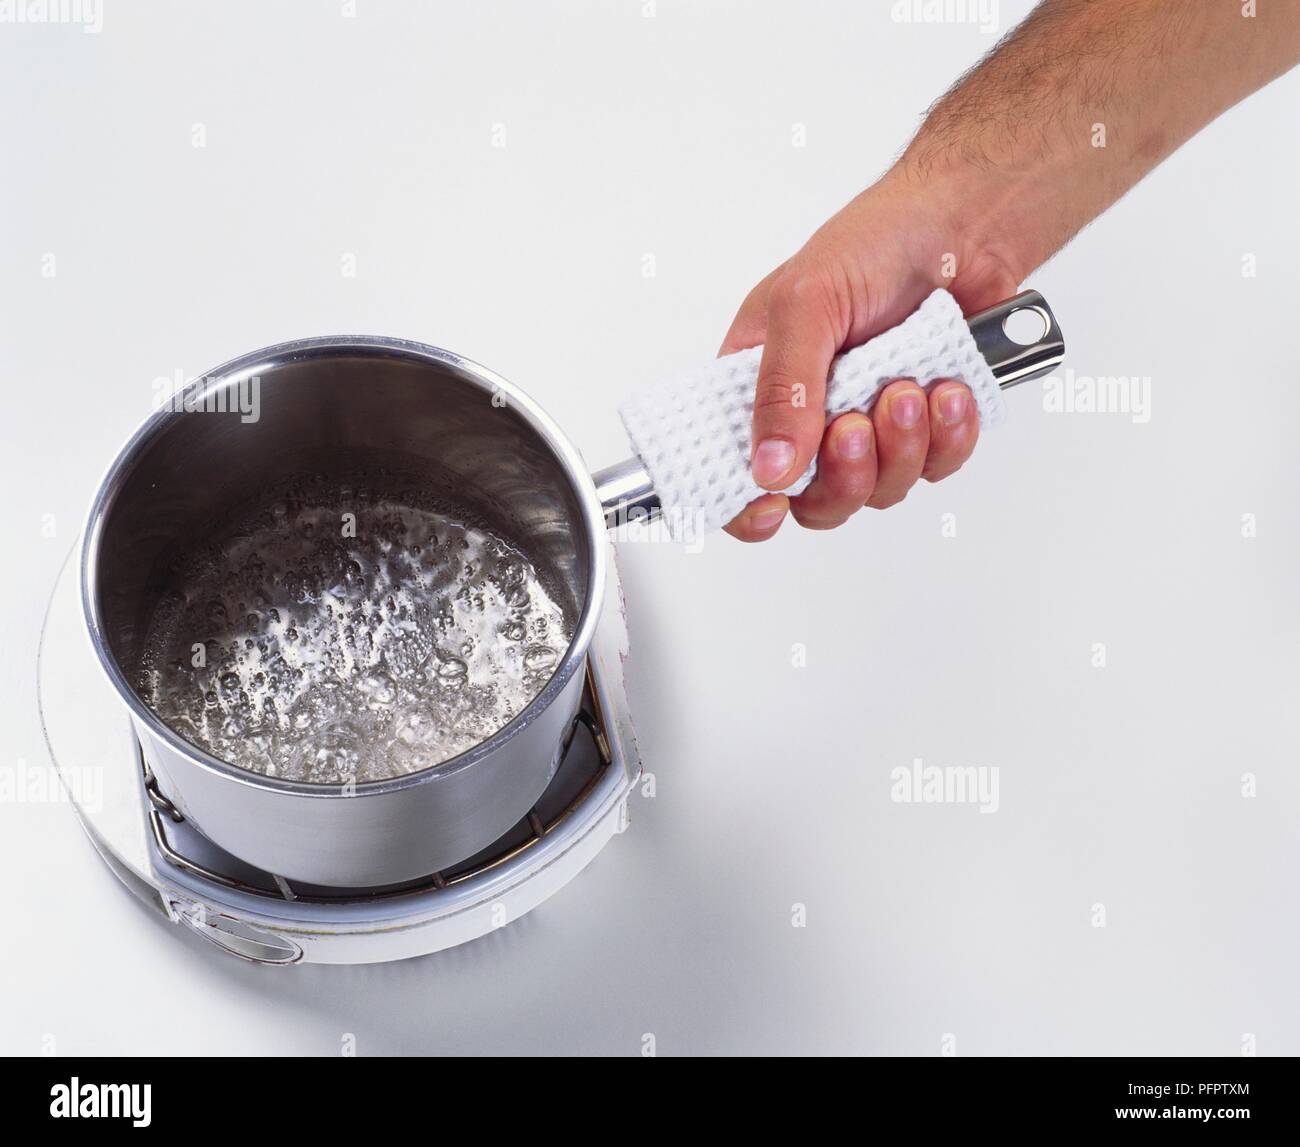 Heizung Wasser und Zucker Sirup in kochtopf (und karamellsauce  Stockfotografie - Alamy